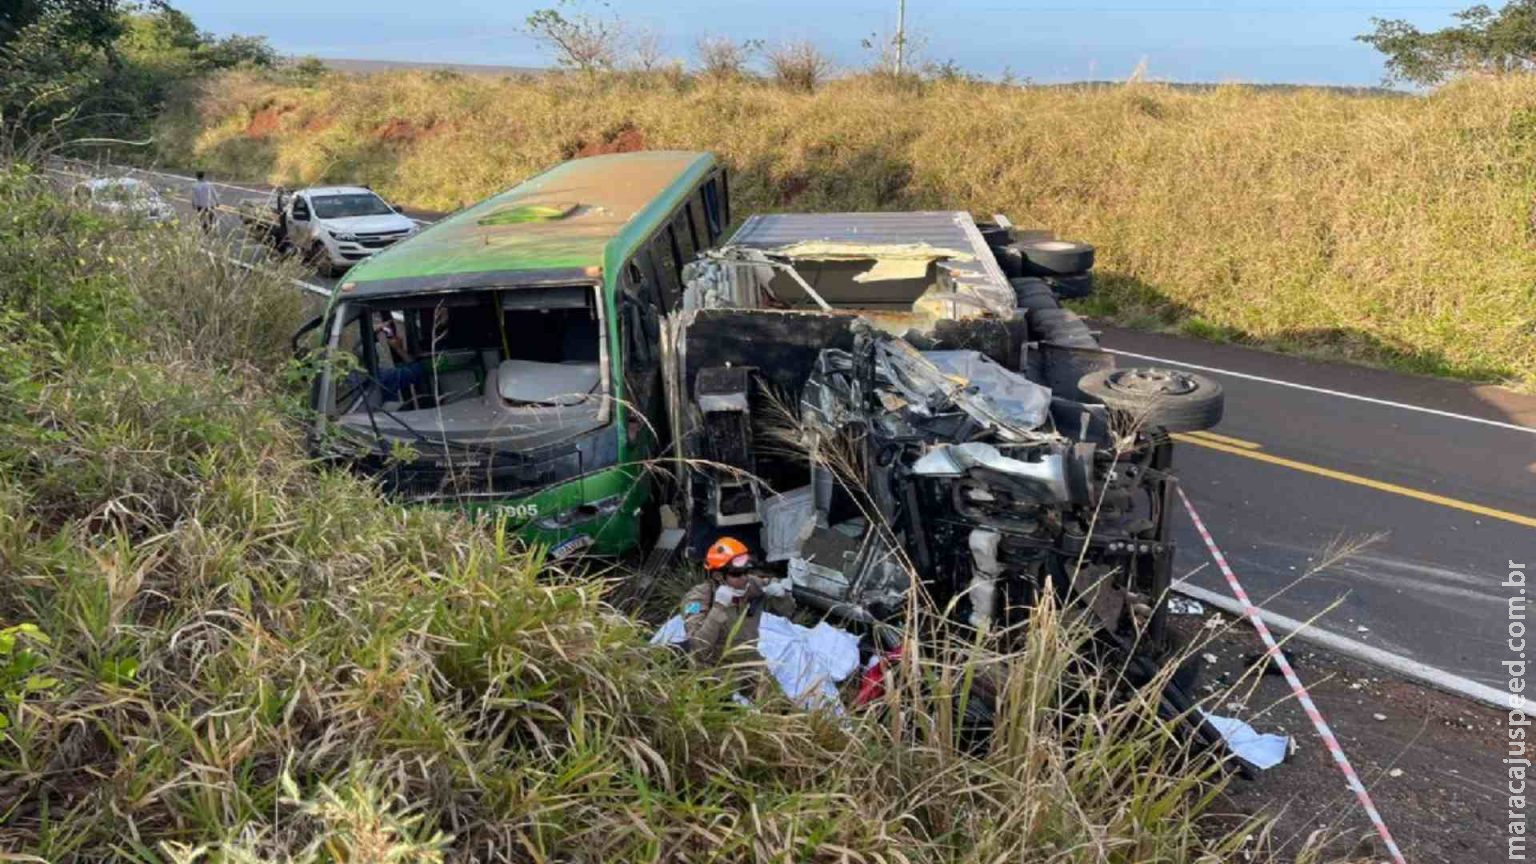 Caminhoneiro de 22 anos que morreu em acidente pode ter dormido ao volante